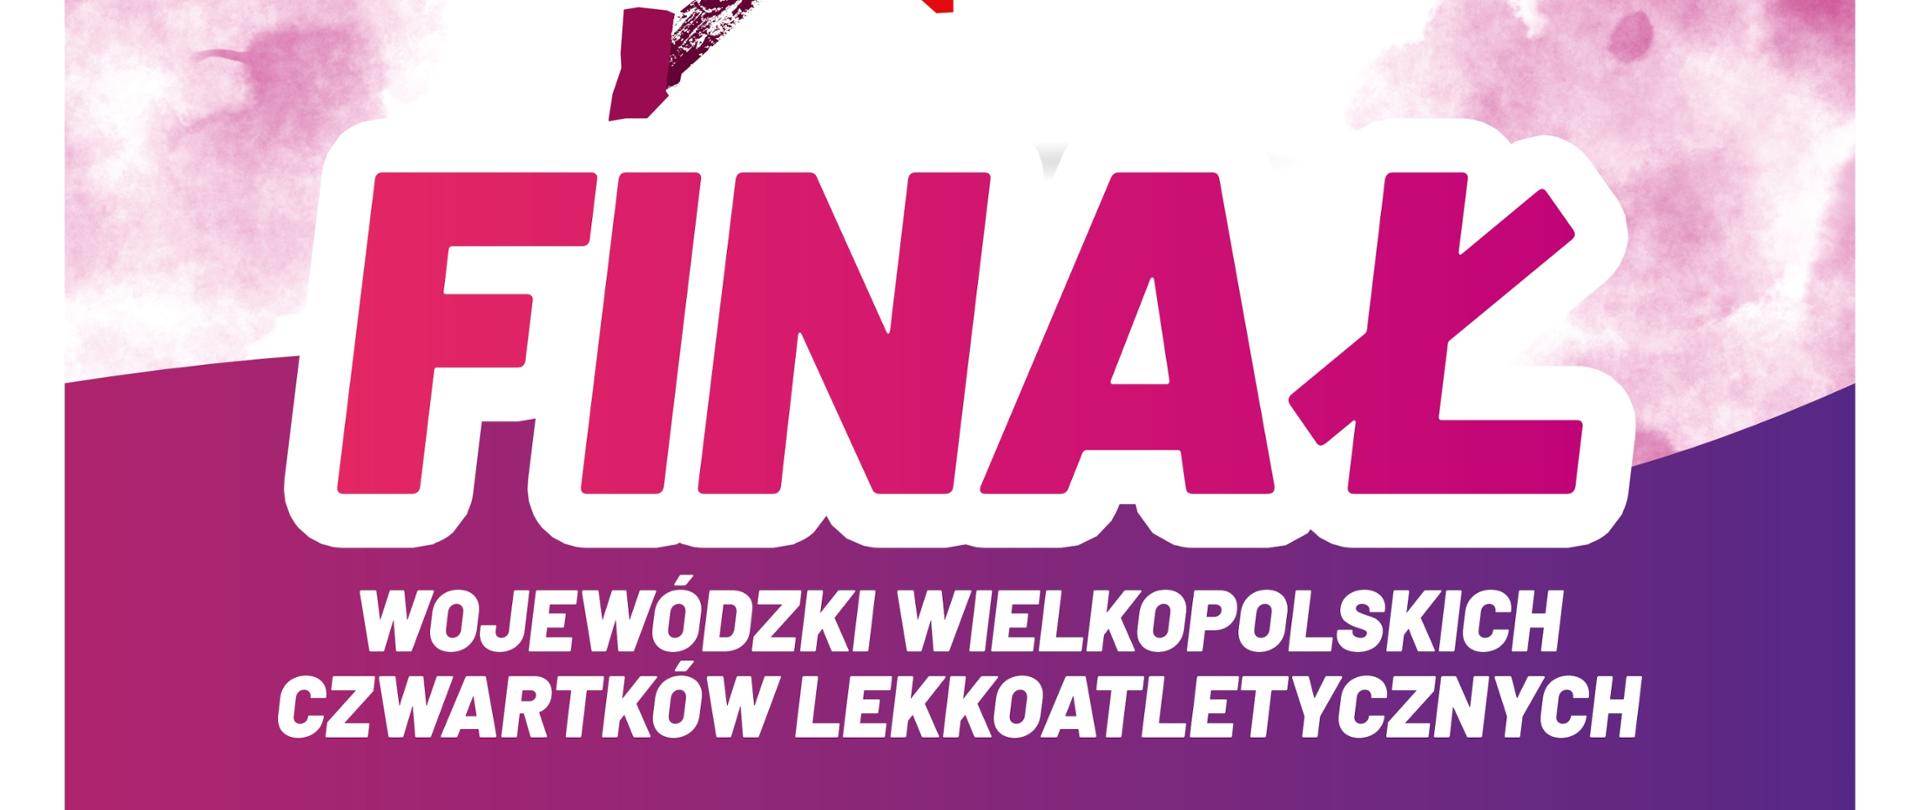 Plakat informacyjny o finale Wojewódzkim Wielkopolskich Czwartków Lekkoatletycznych, który odbędzie się 9 czerwca 2022 roku o godz. 11:00 na stadionie sportowym w Budzyniu